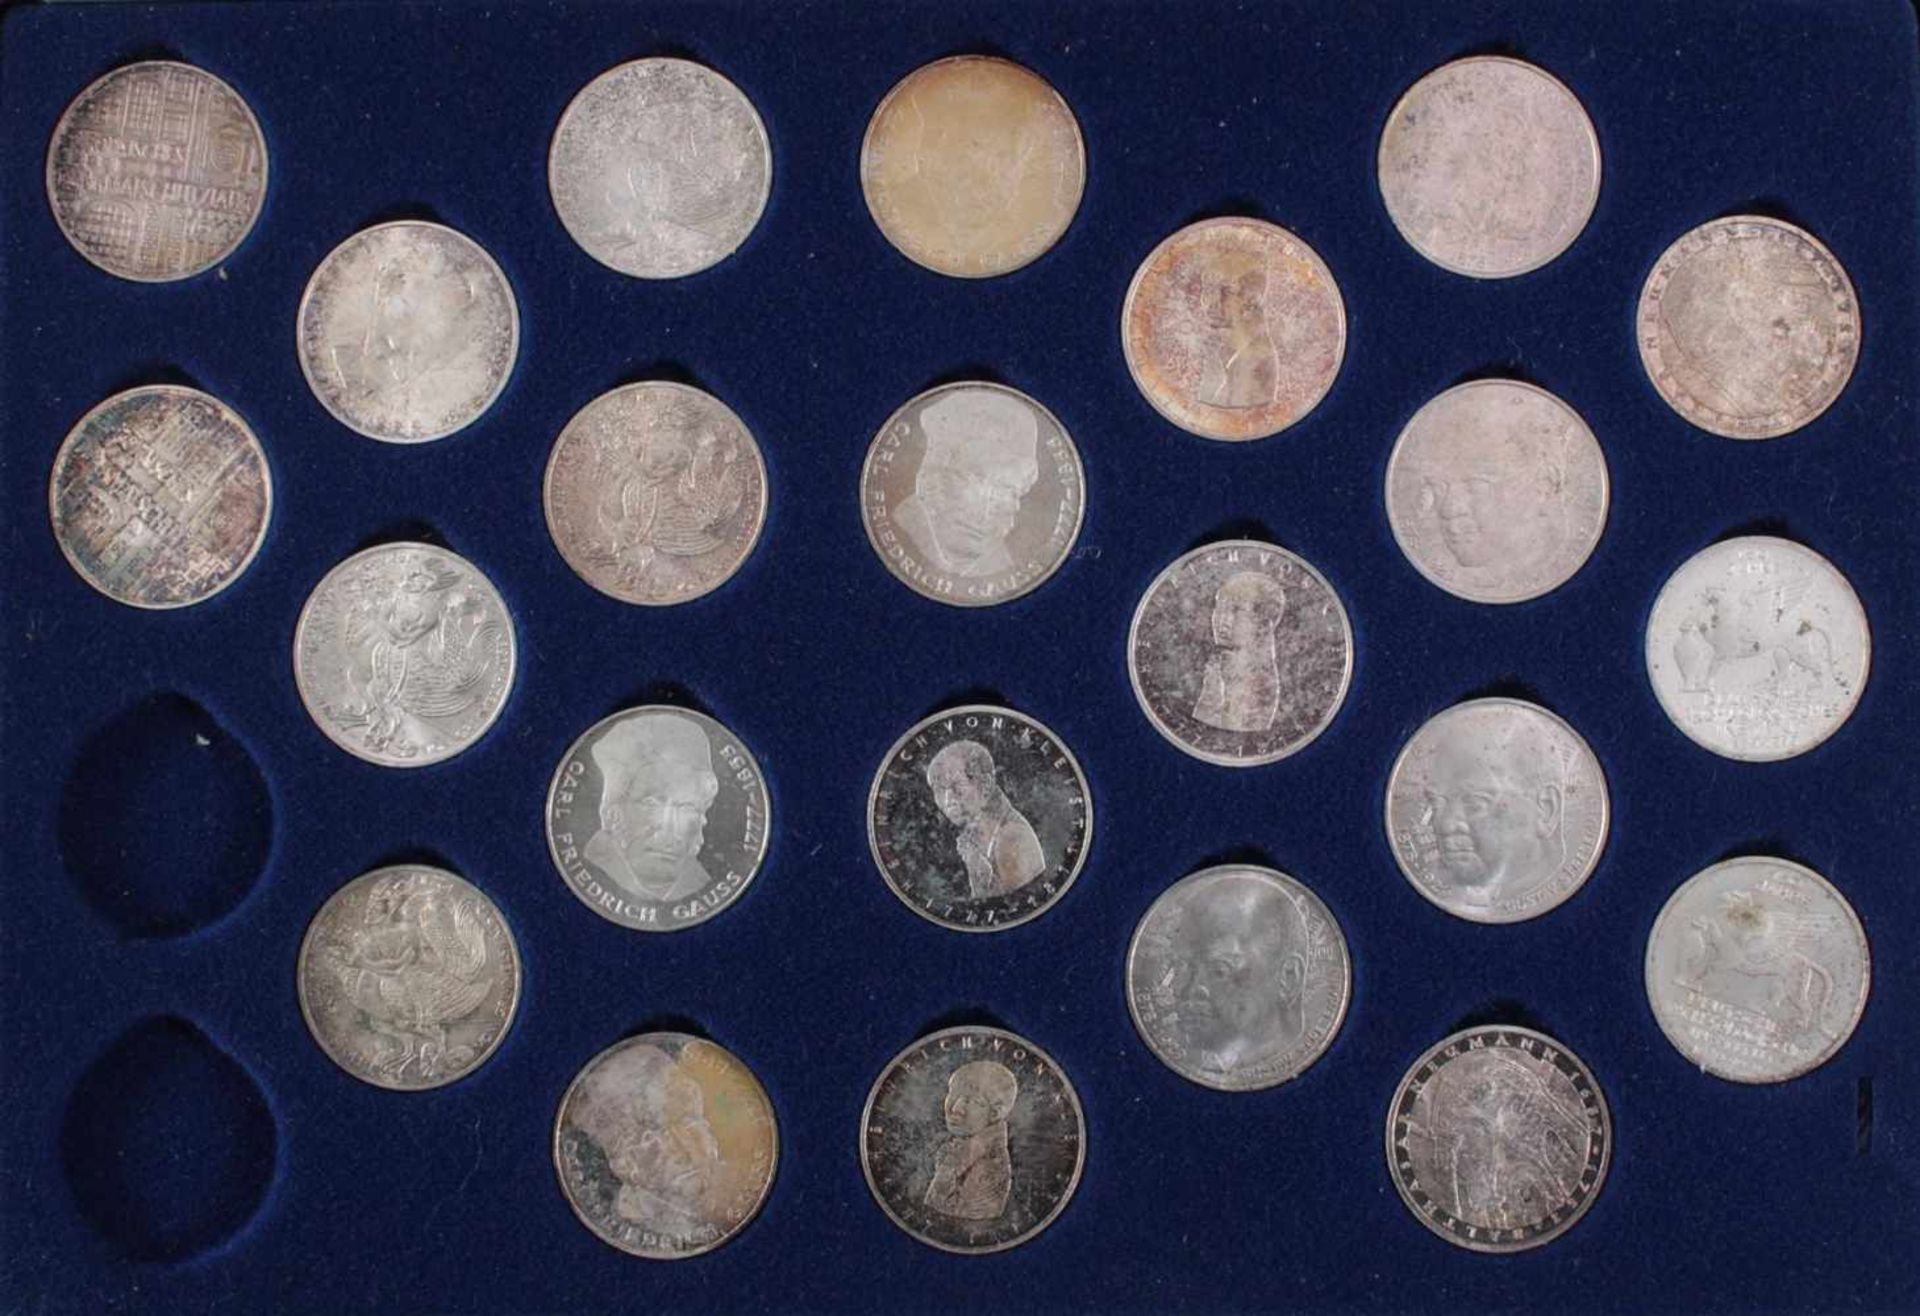 5 DM Sammlung Gedenkmünzen von 1951 bis 197470 Münzen in original Sammelbox